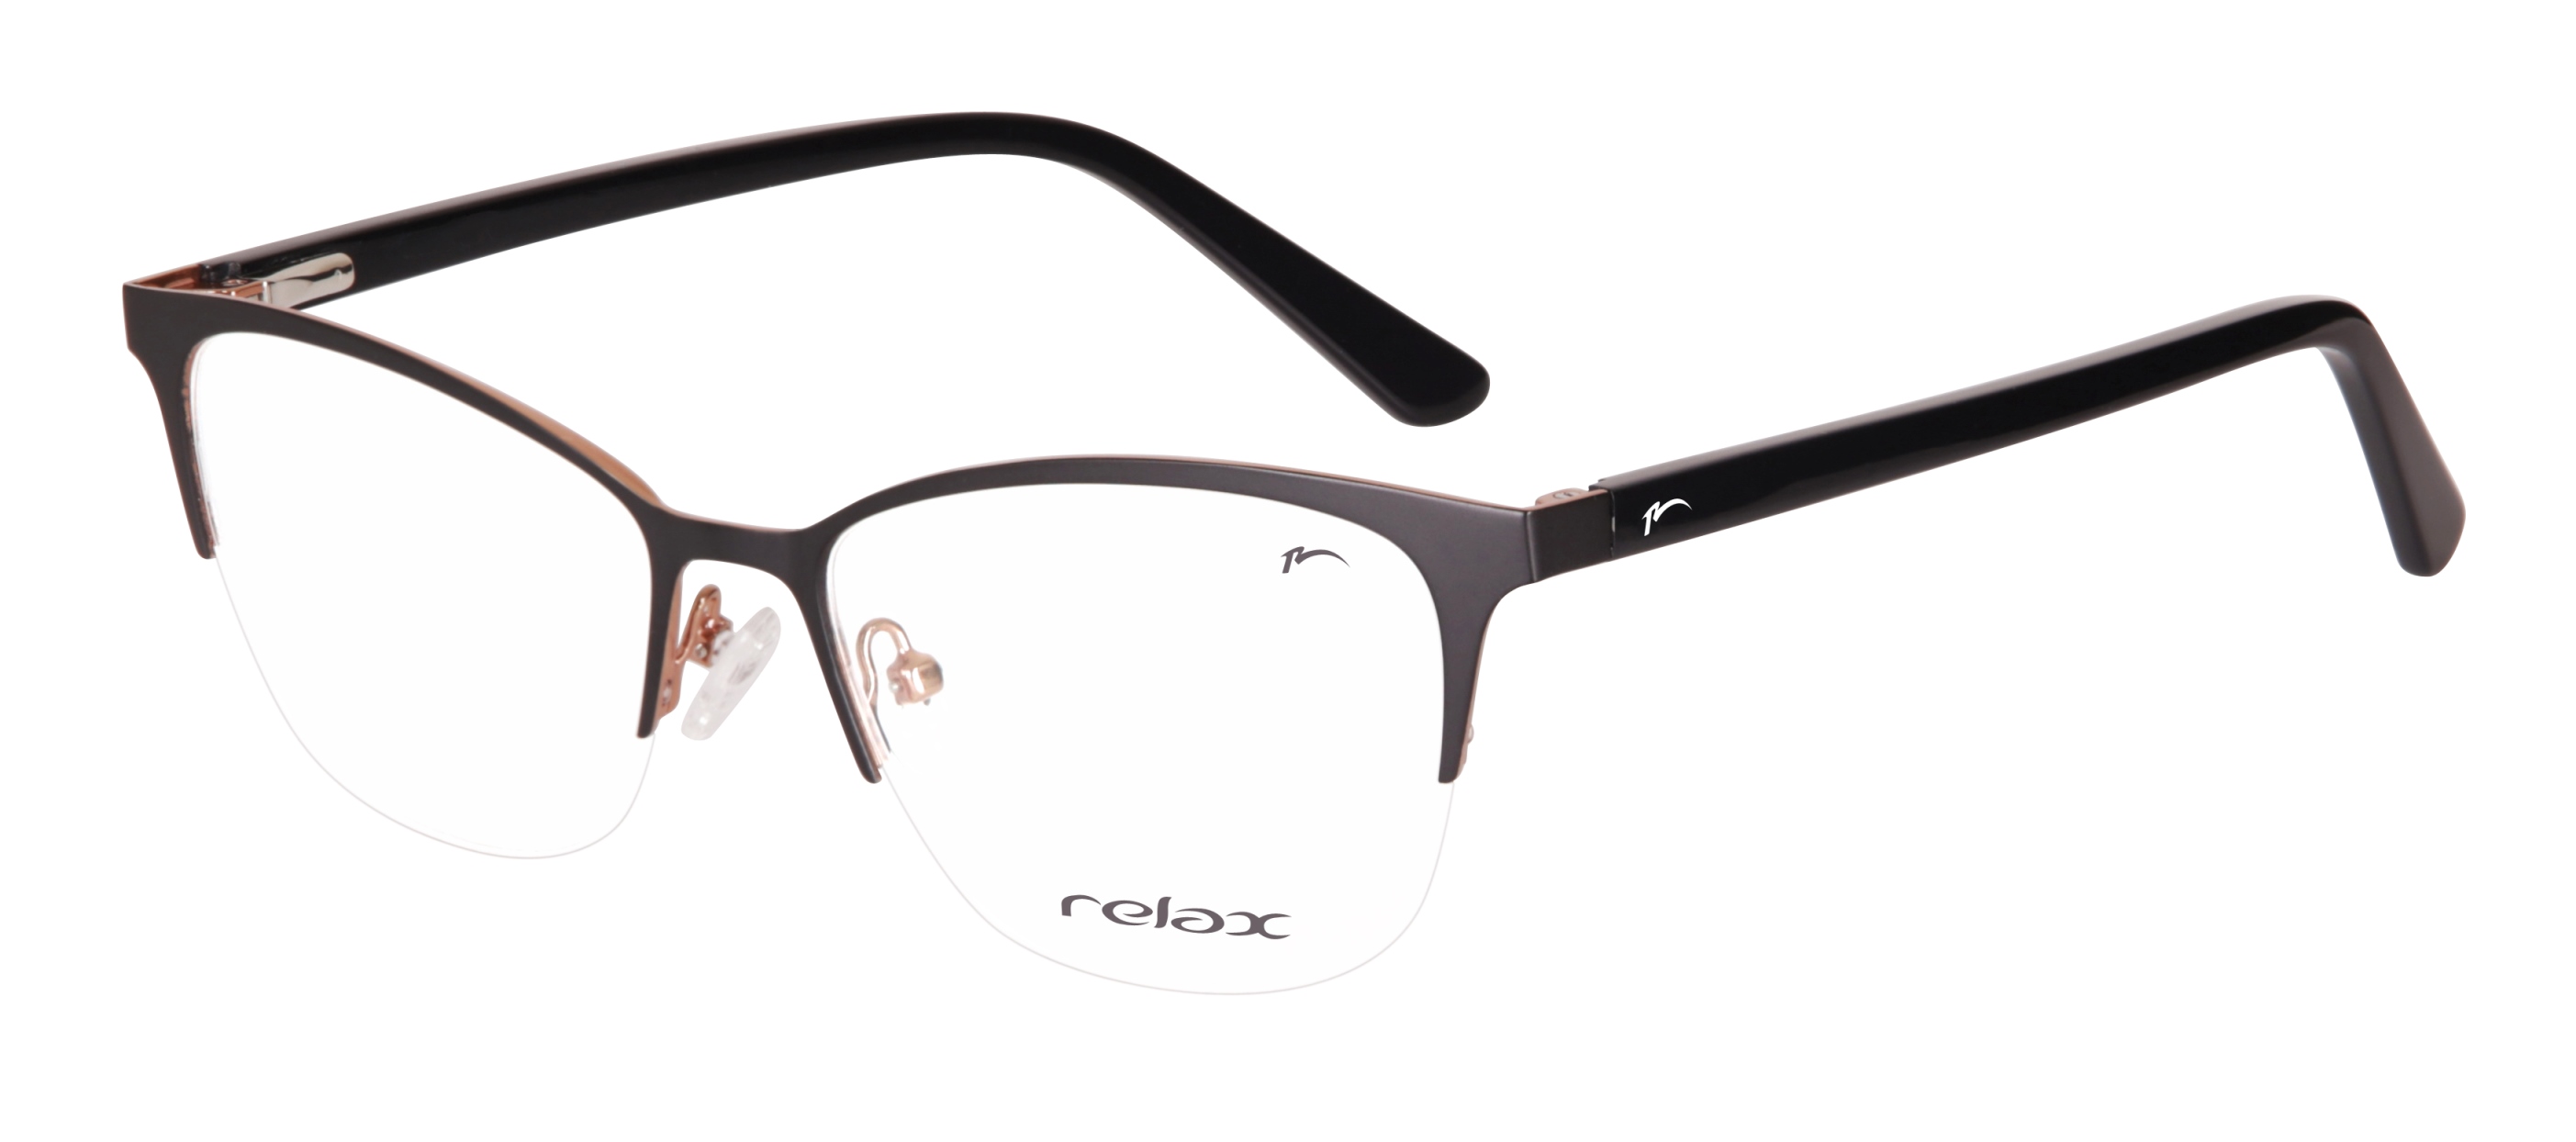 Optical frames Relax Helen RM124C1